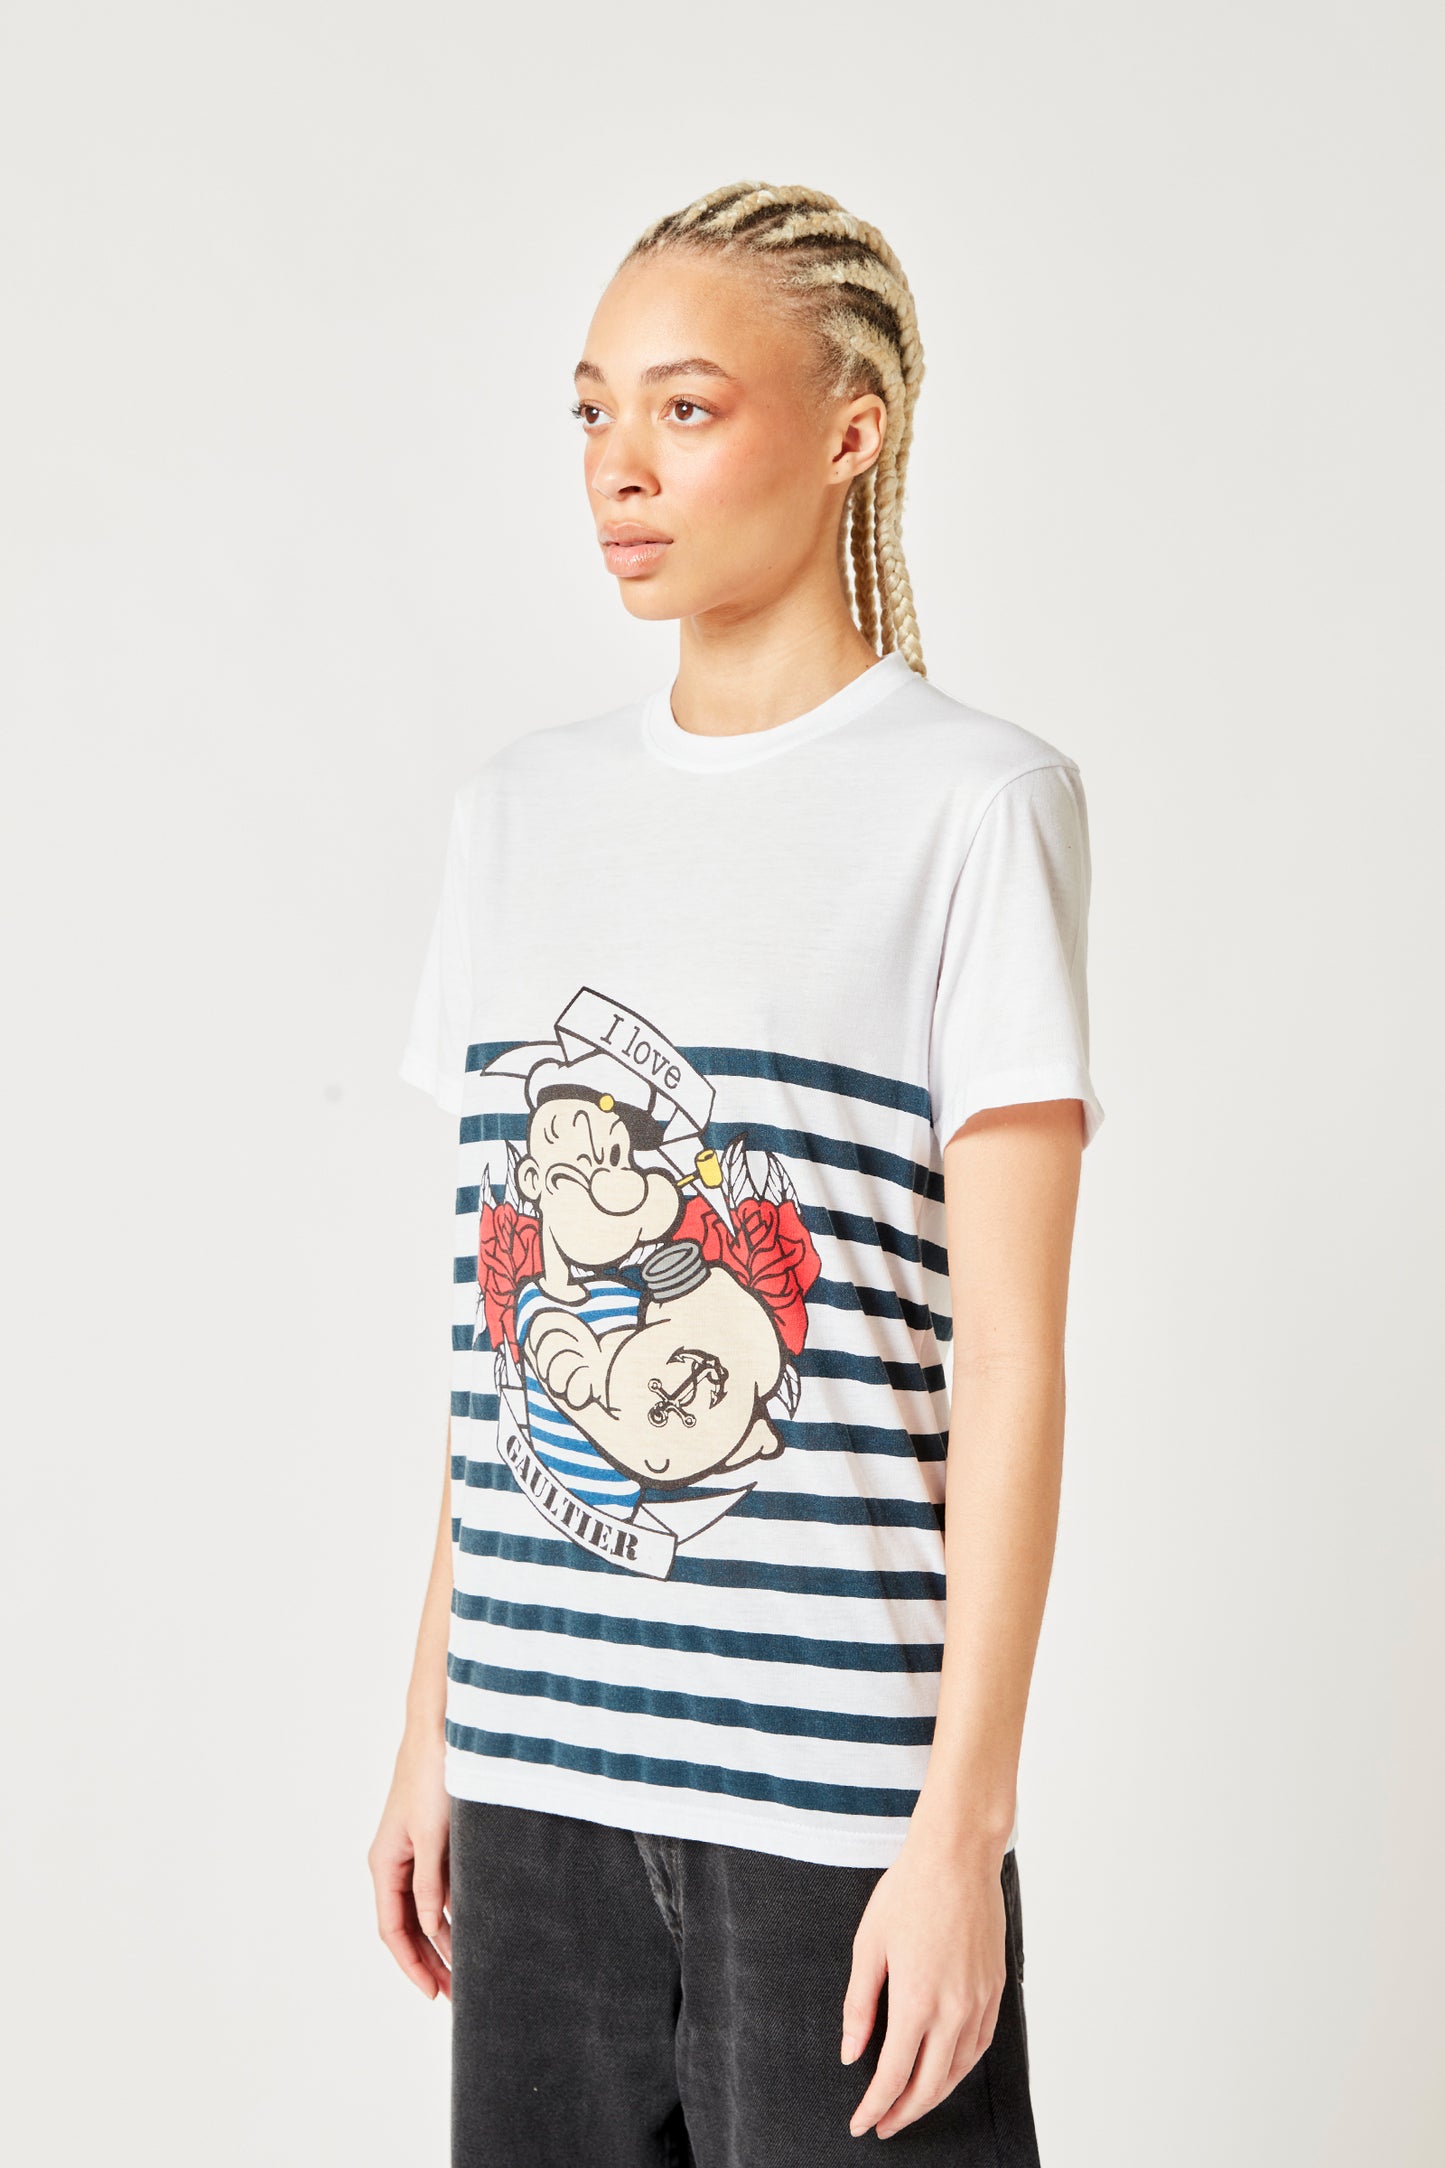 Jean Paul Gaultier Popeye T-Shirt